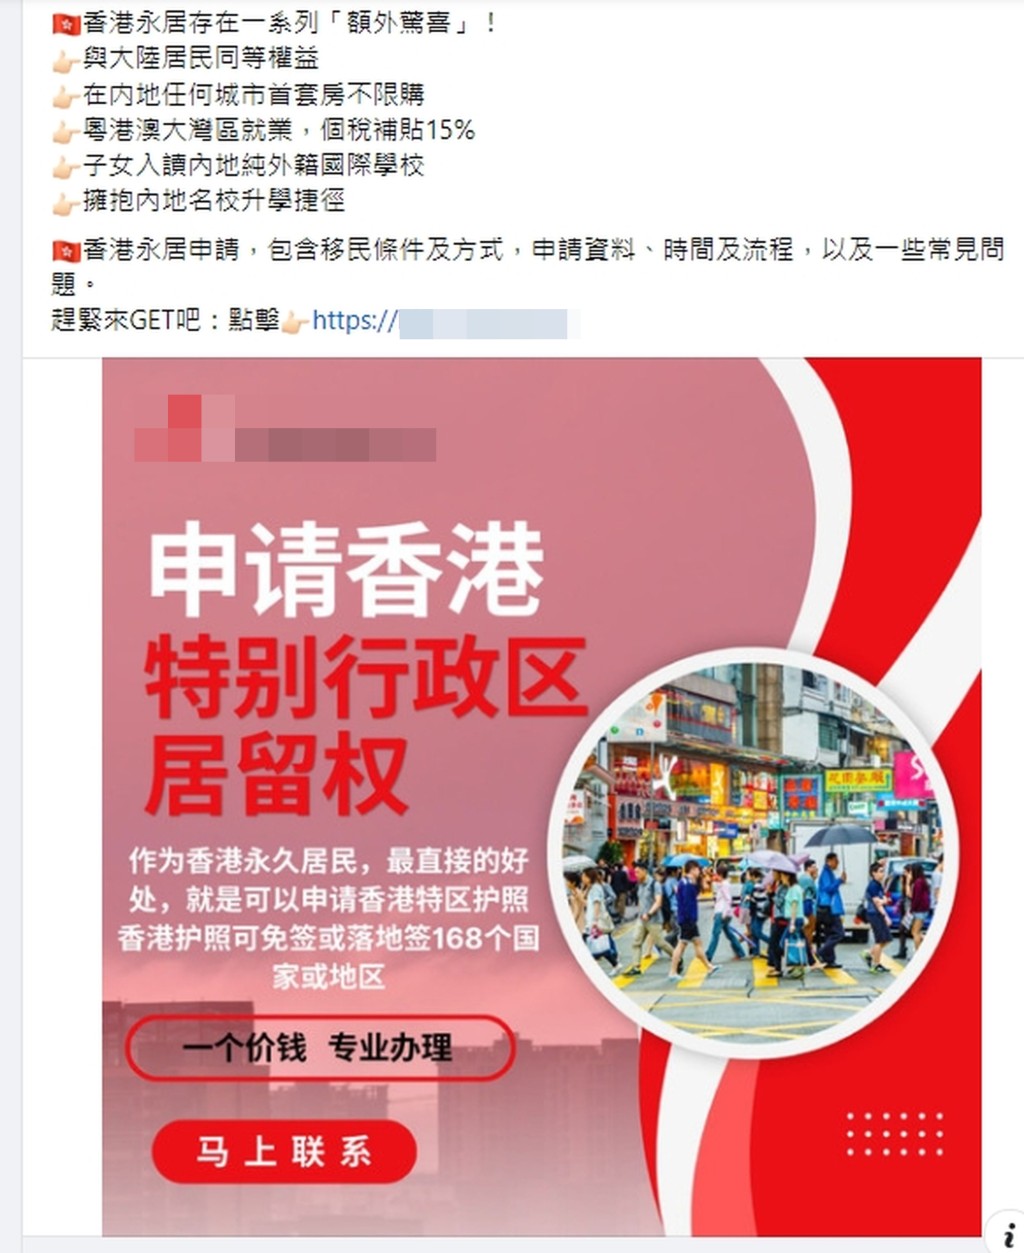 骗徒声称可协助客人取得香港永久居民身份。 网上图片